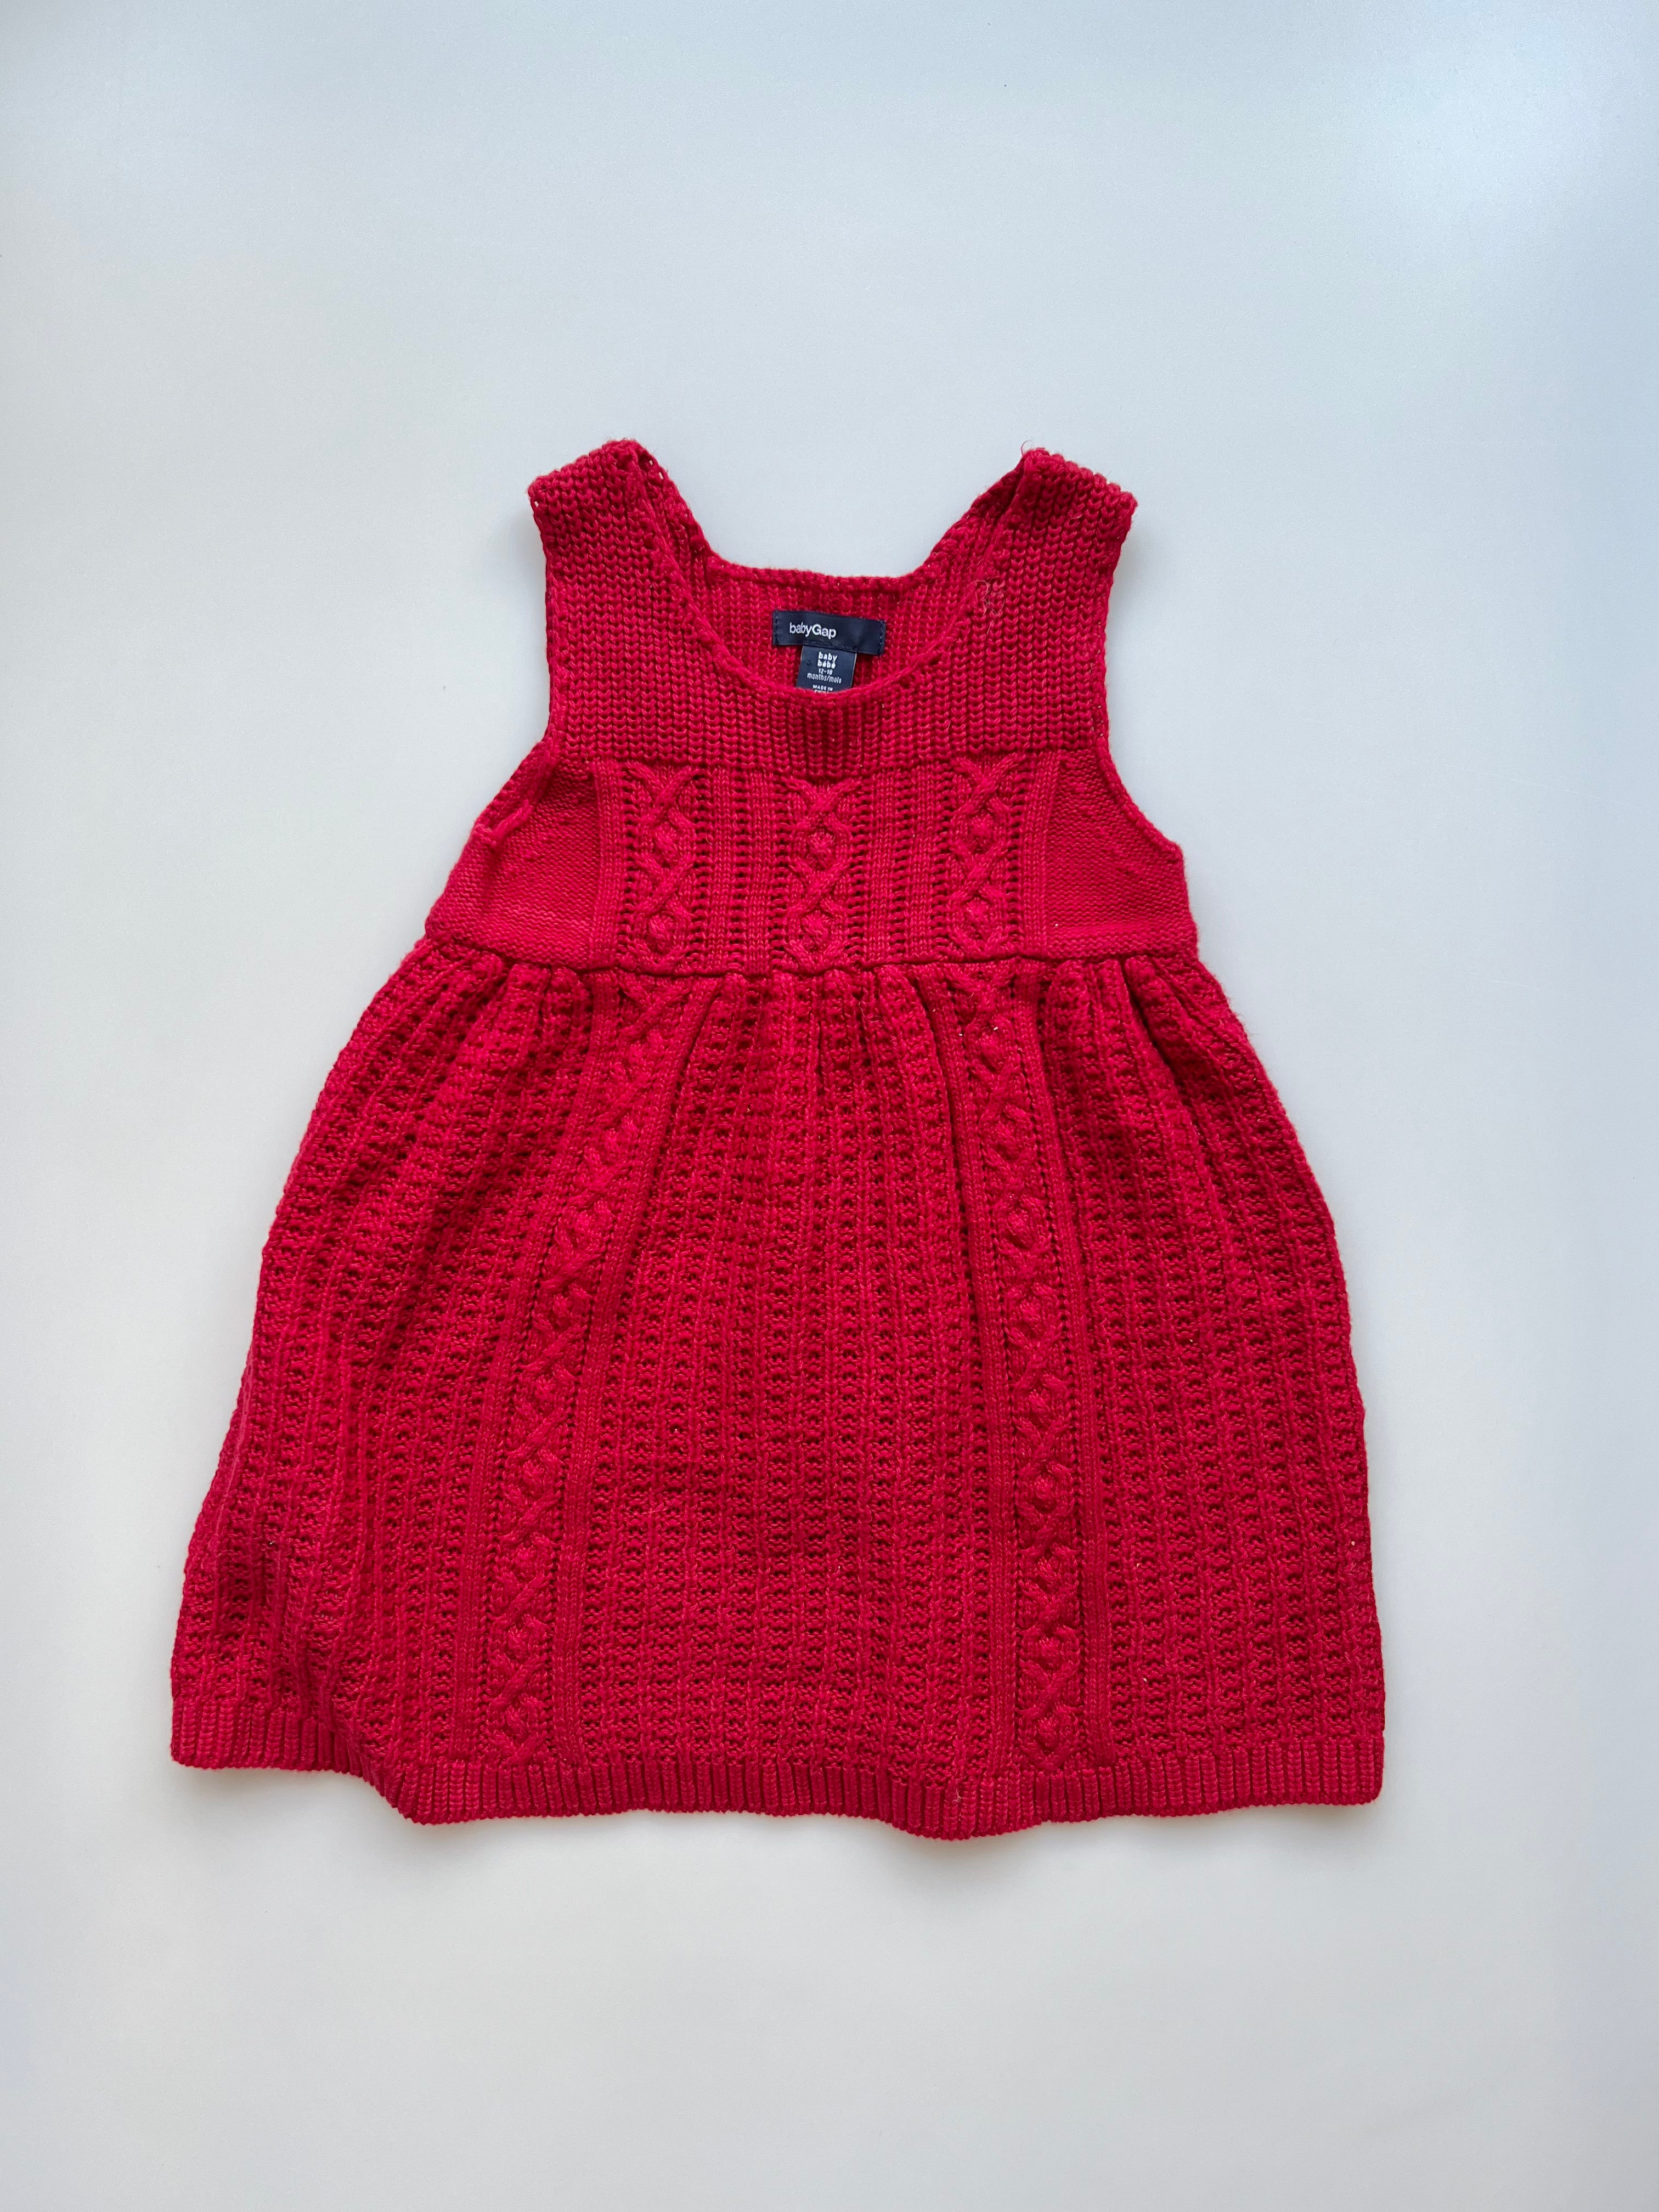 Gap Knitted Dress 12-18 Months